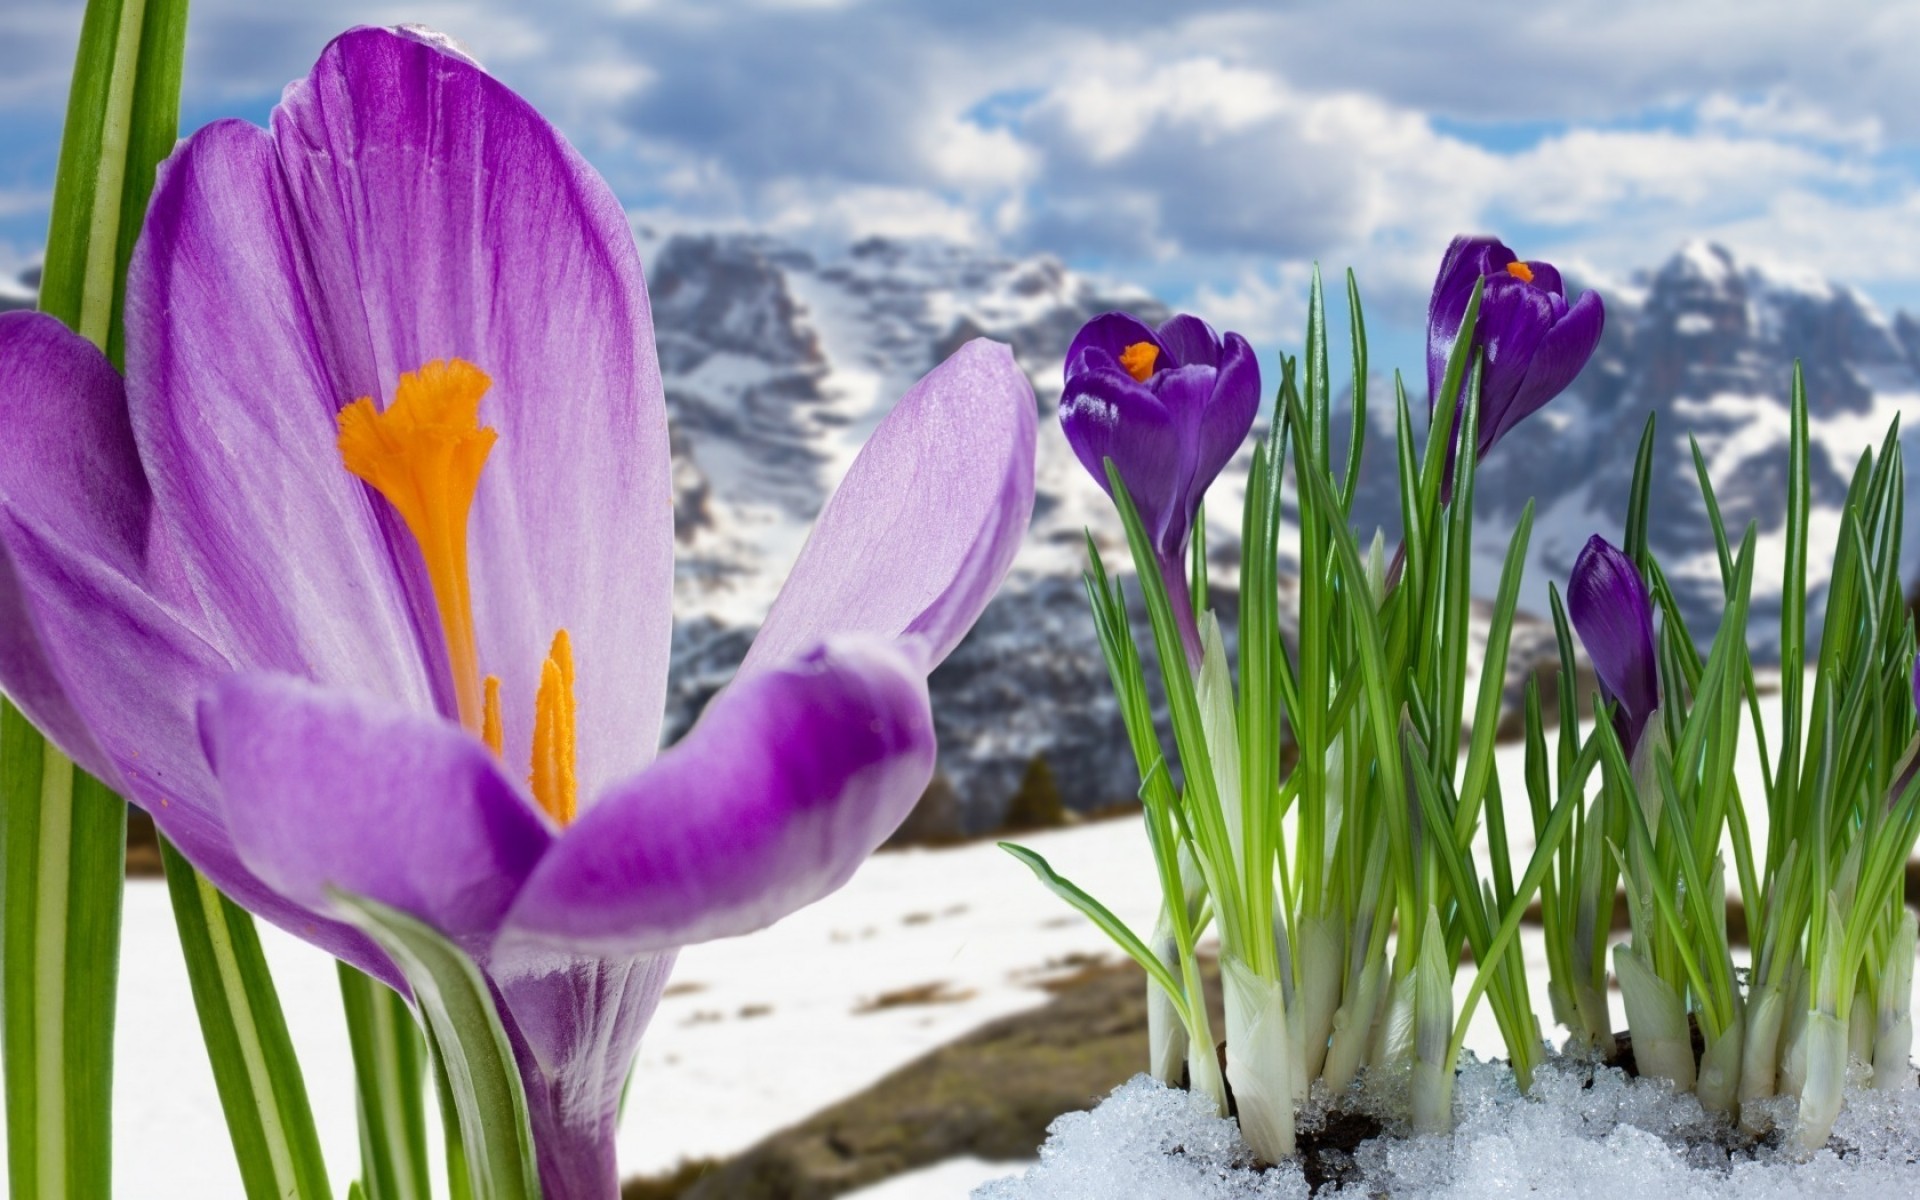 весна природа цветок крокус пасха сезон шафран флора лето яркий лист хорошую погоду цветочные цвет рано лампы рост на открытом воздухе поле сад горы снег фиолетовый